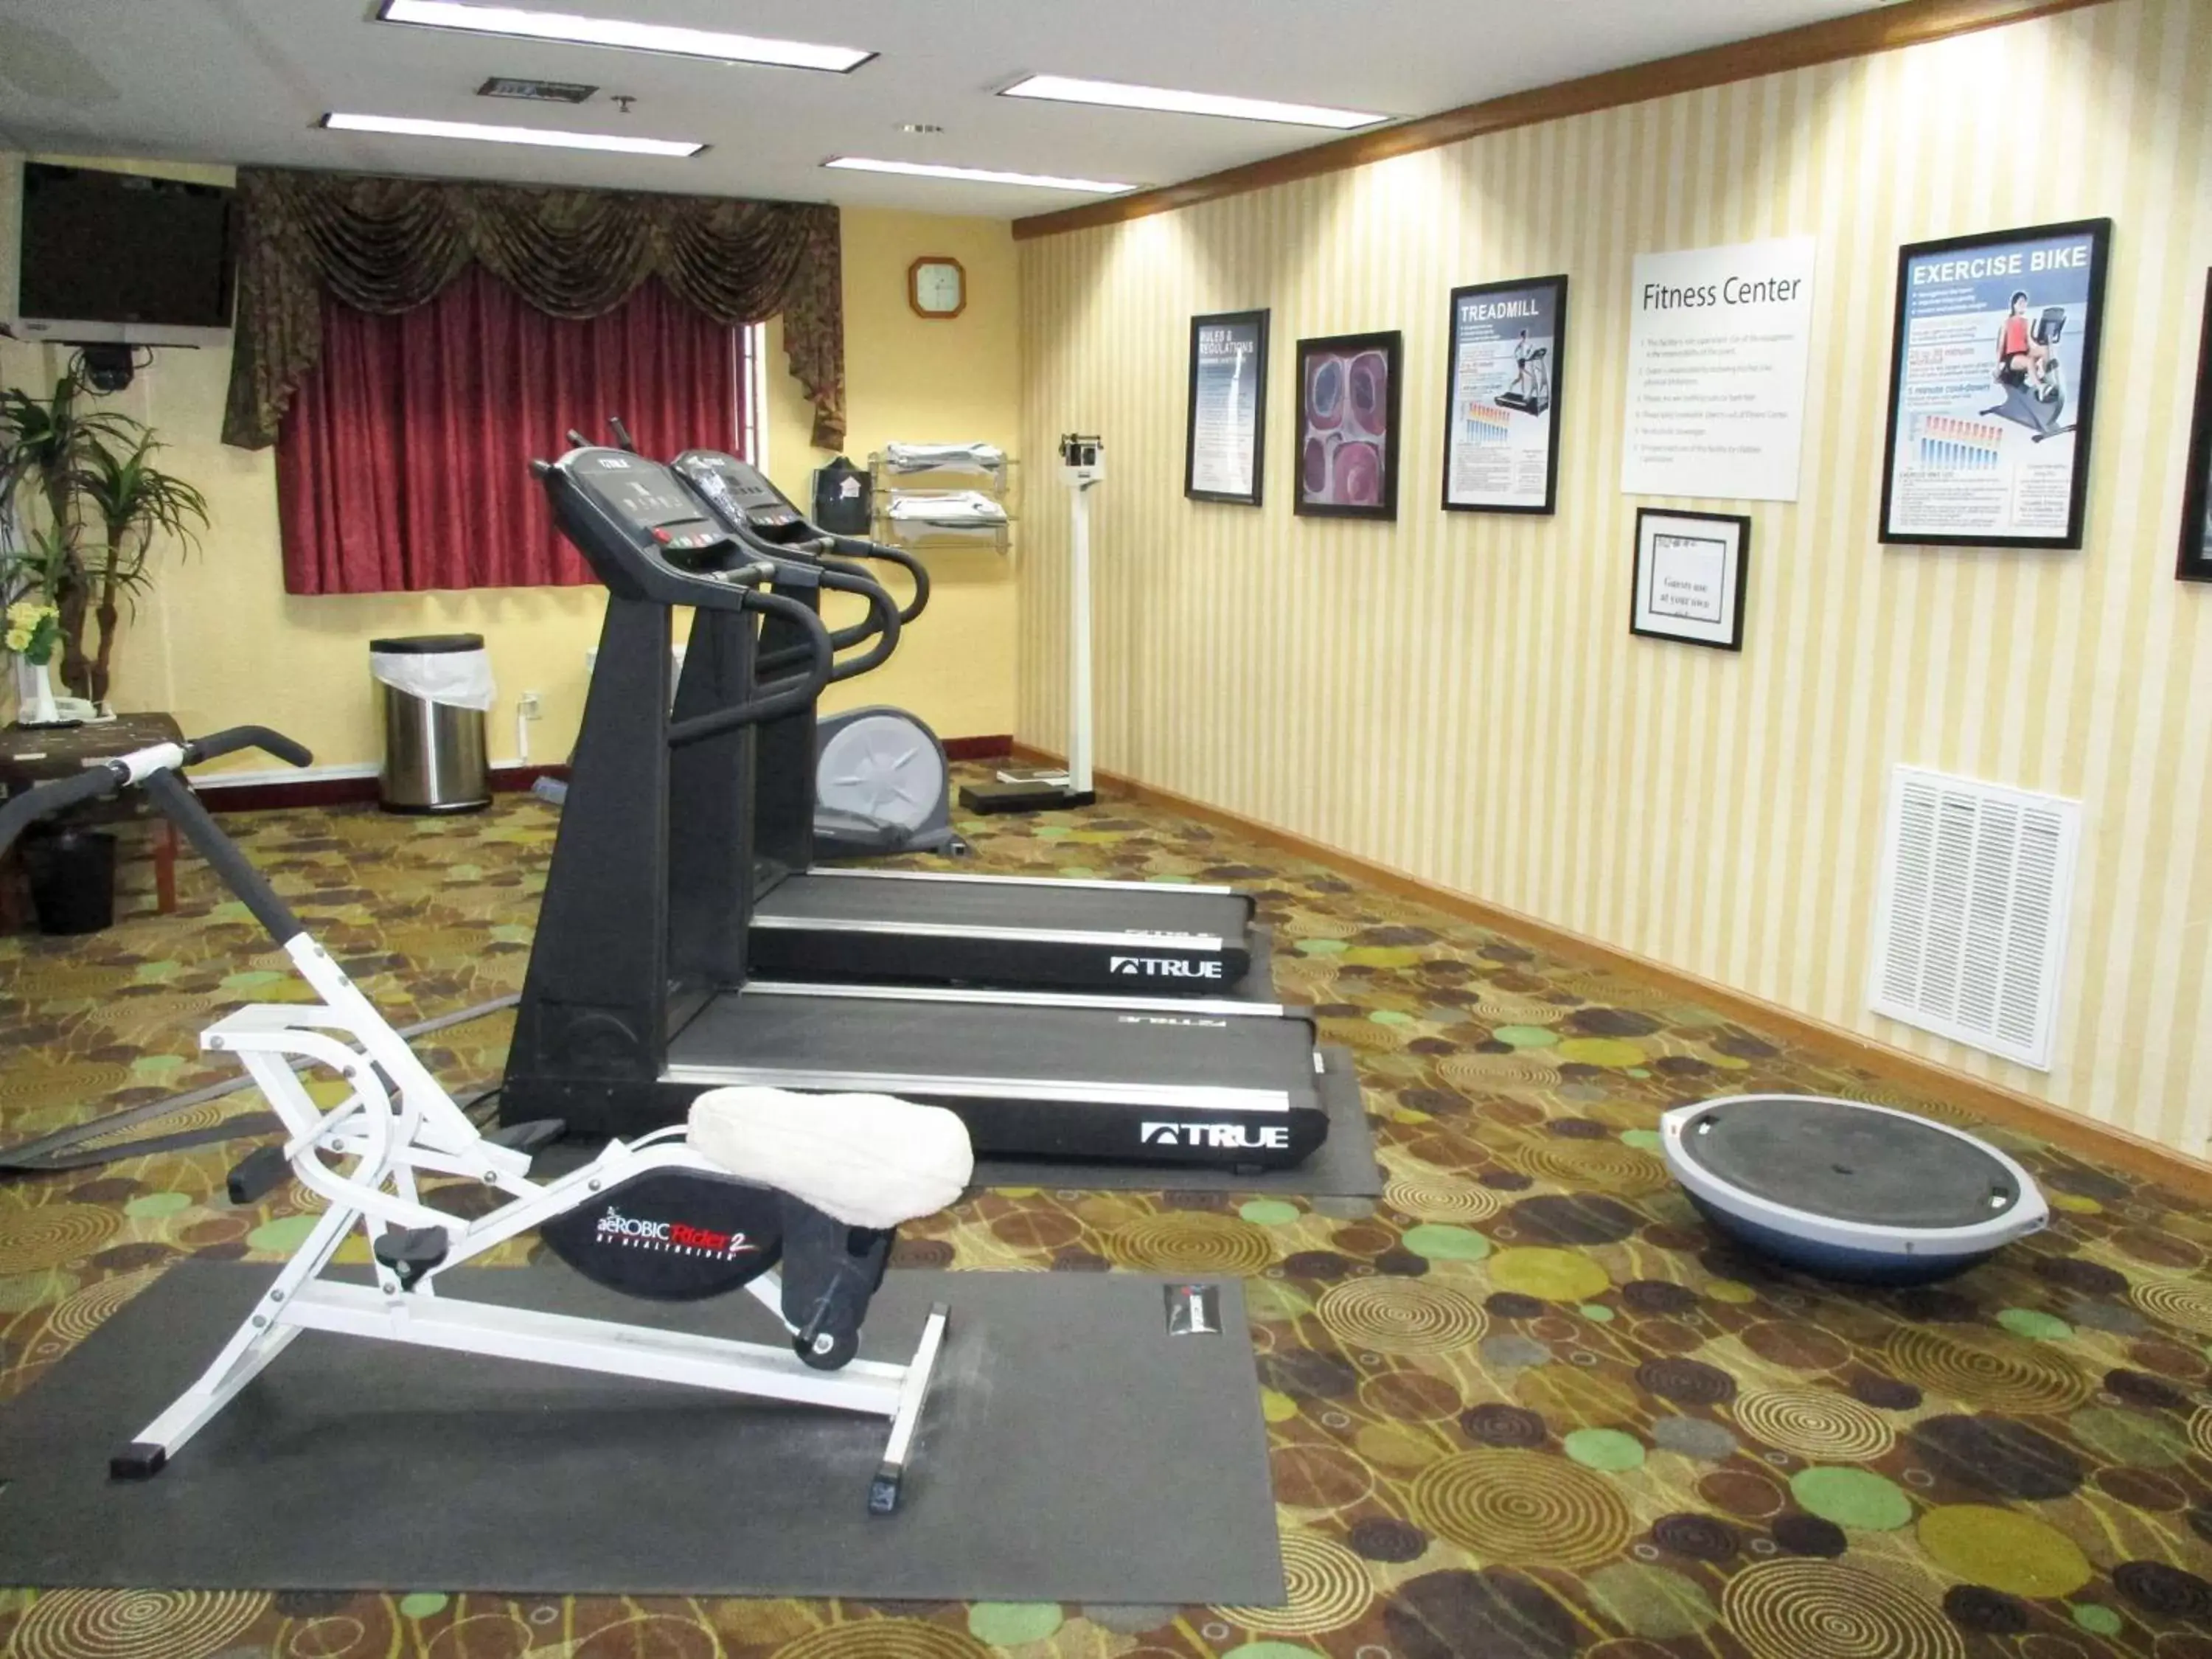 Fitness centre/facilities, Fitness Center/Facilities in Motel 6-Brenham, TX